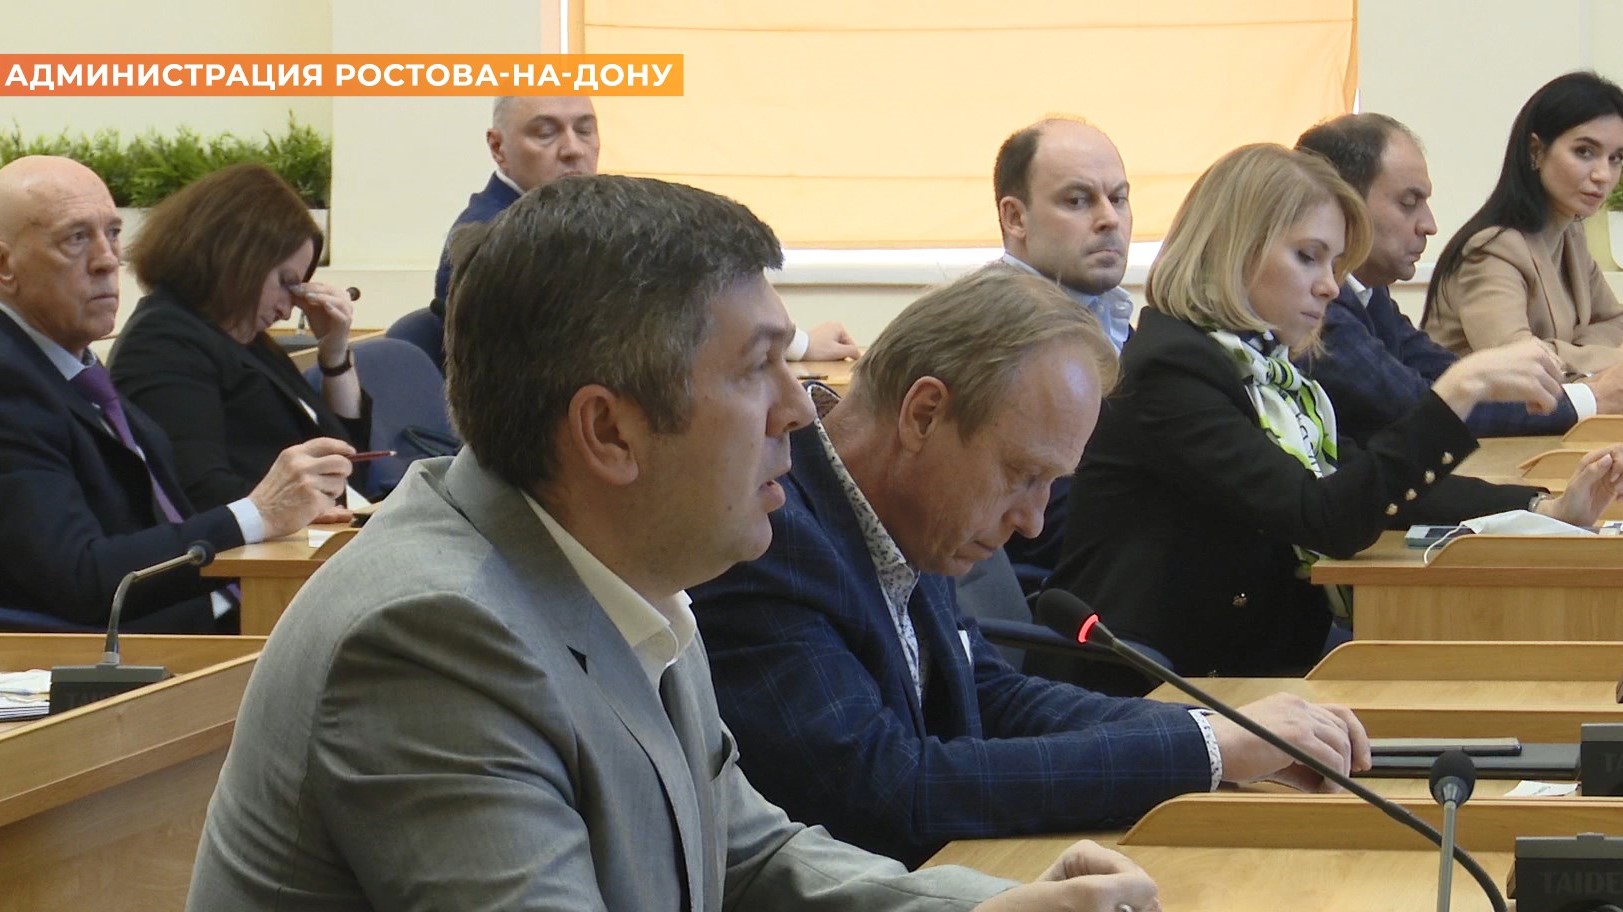 Меры поддержки экономики обсудил А. Логвиненко на встрече с предпринимателями города